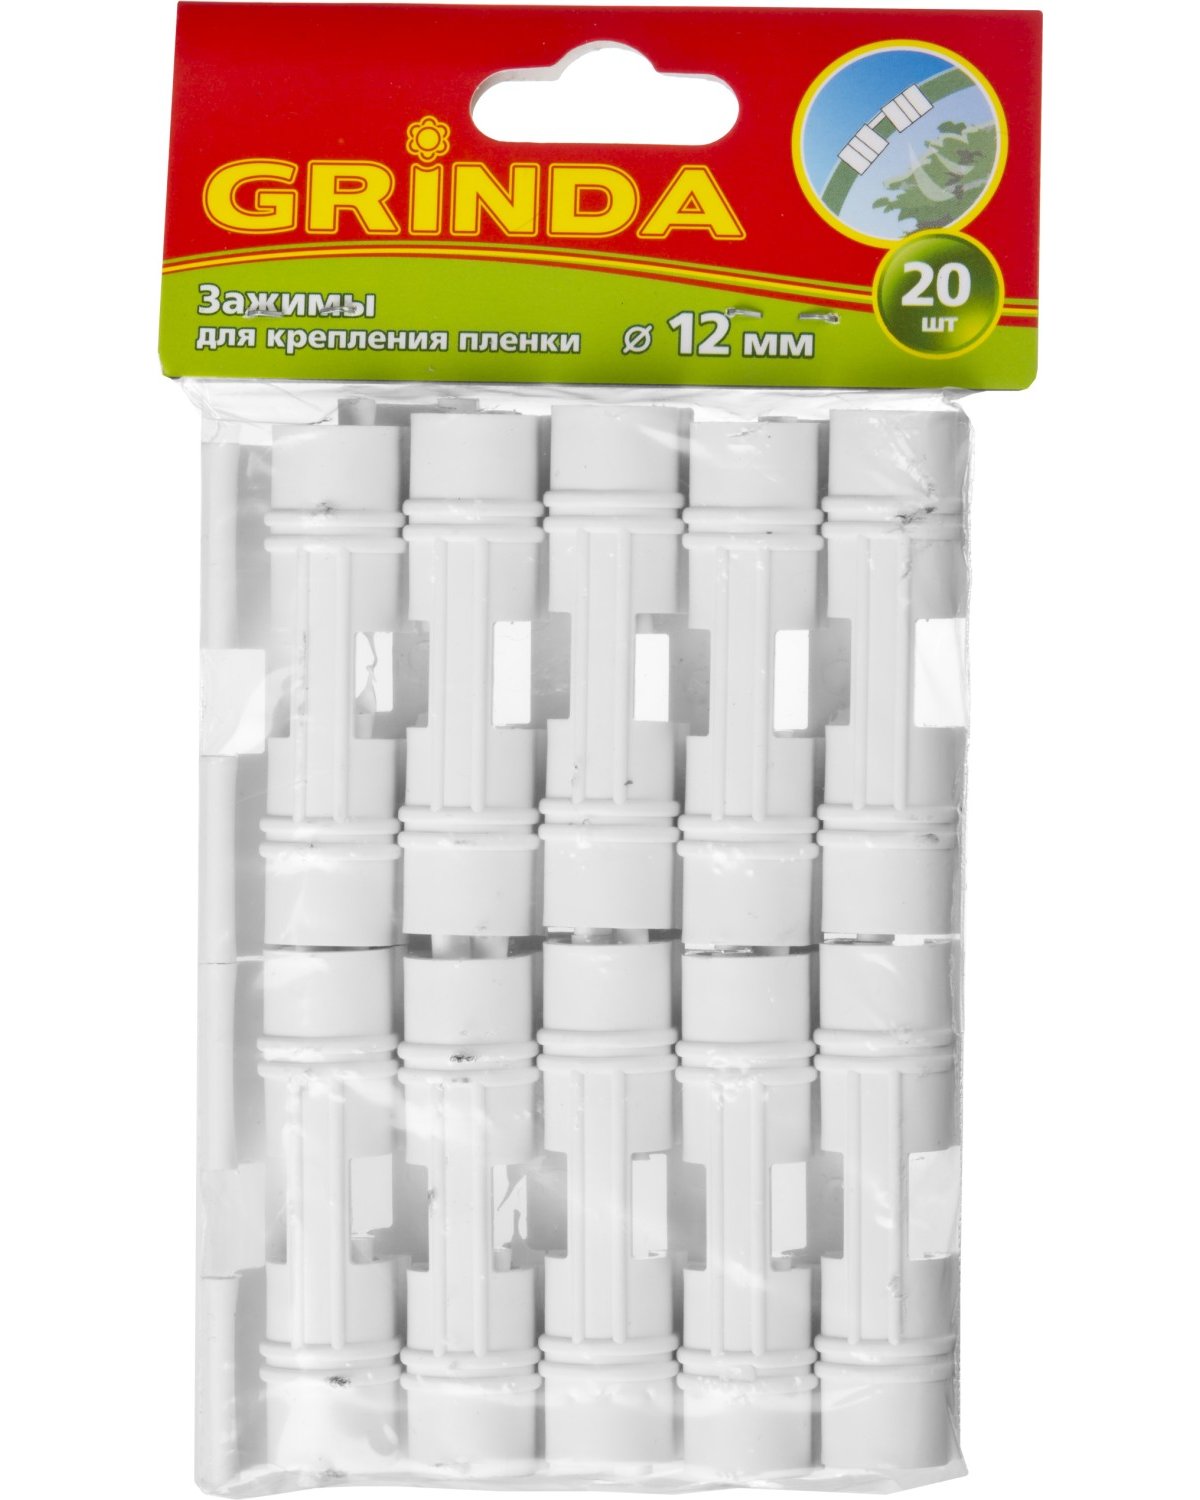 Зажим для крепления пленки GRINDA d12 мм, белый, 20 шт. (422317-12)